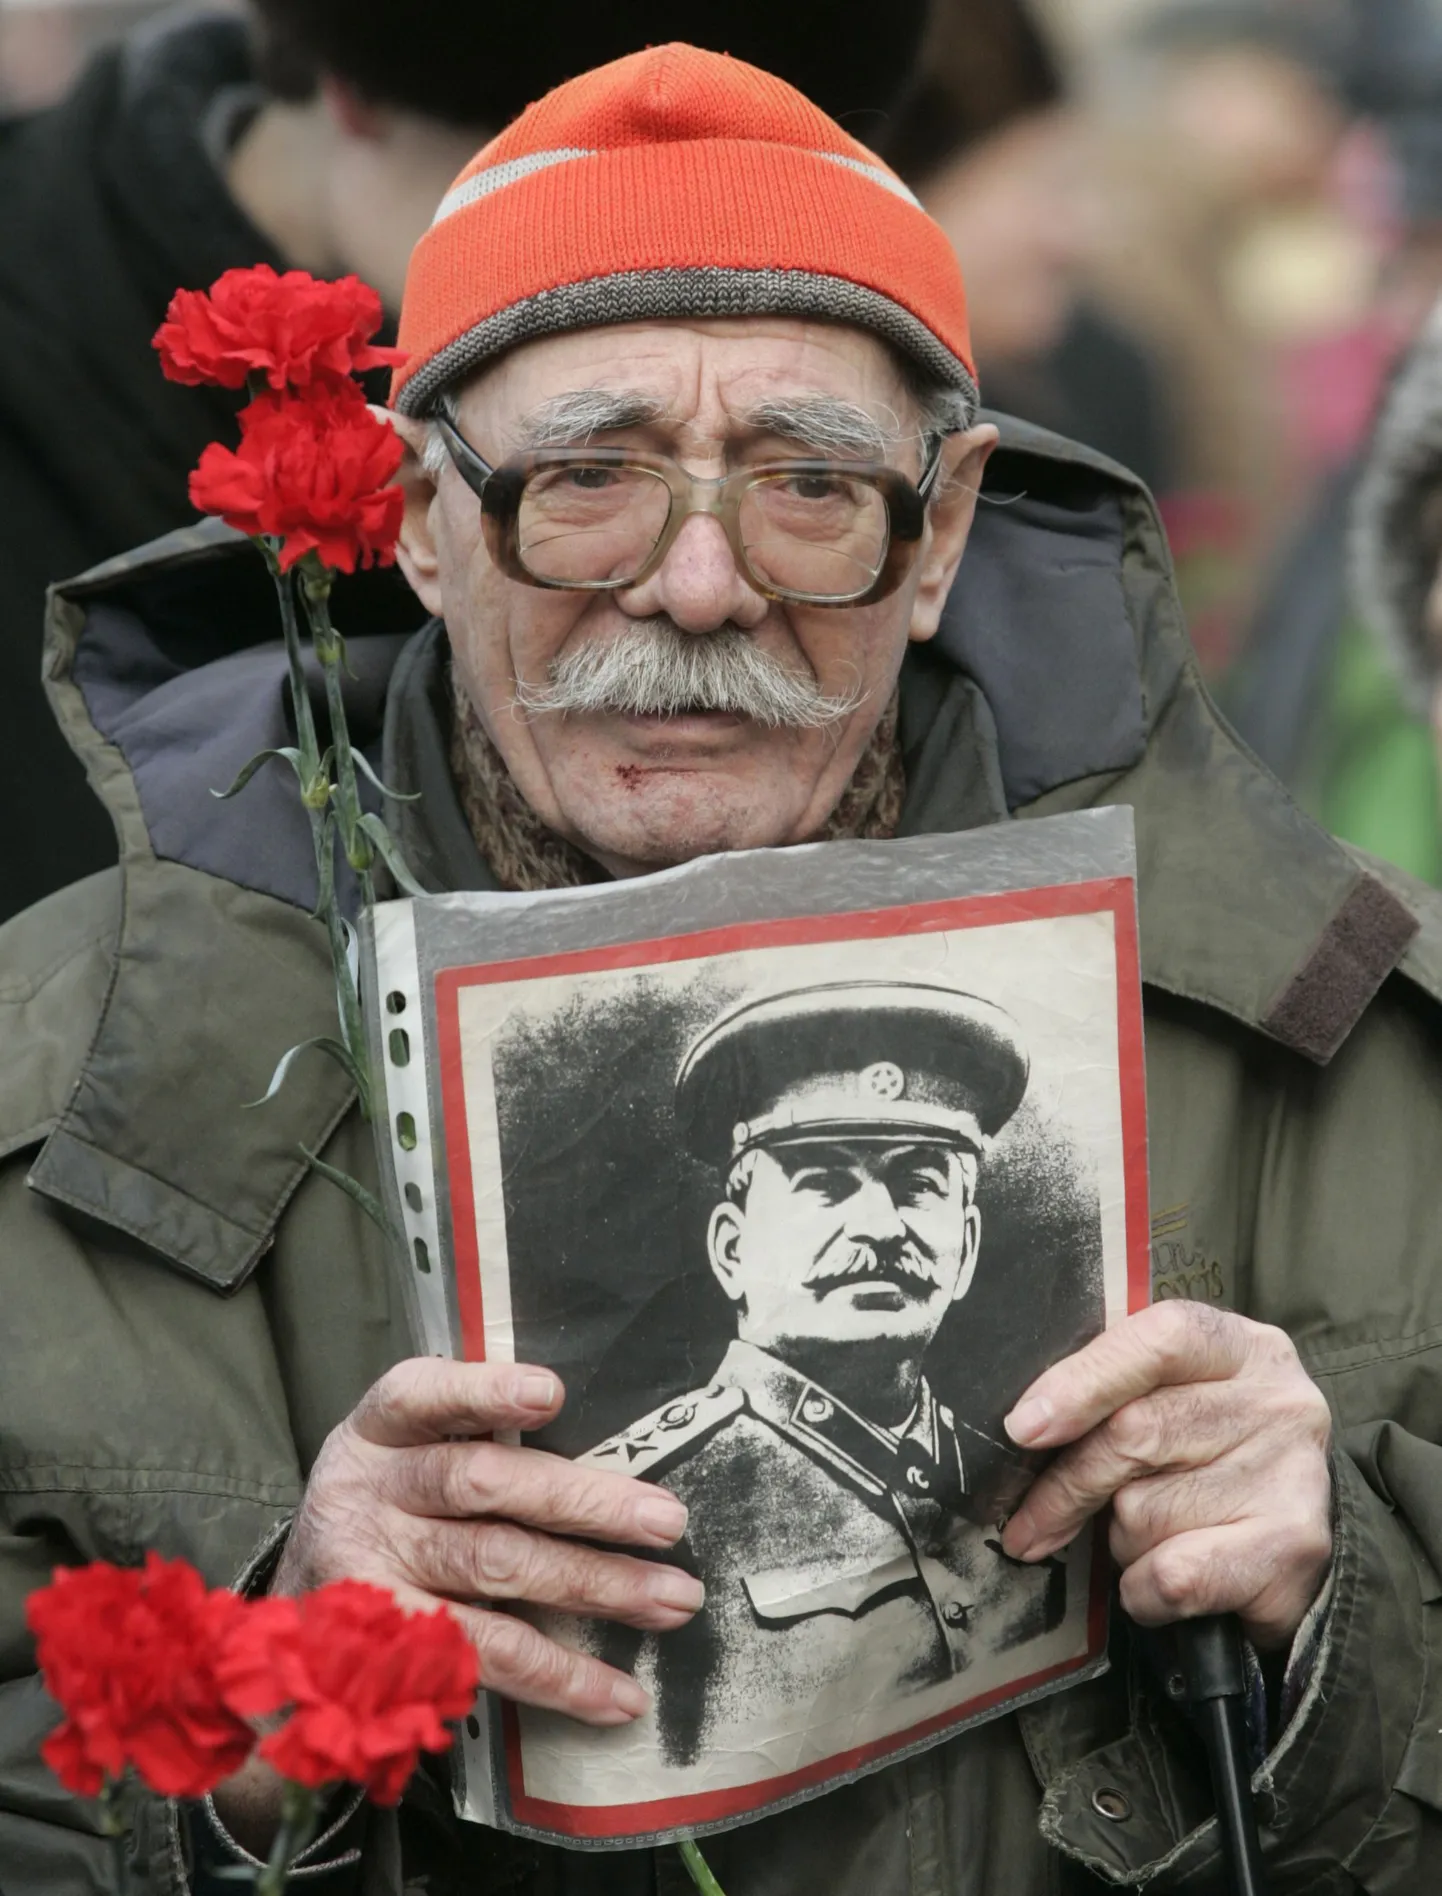 Участник акции держит портрет Сталина.